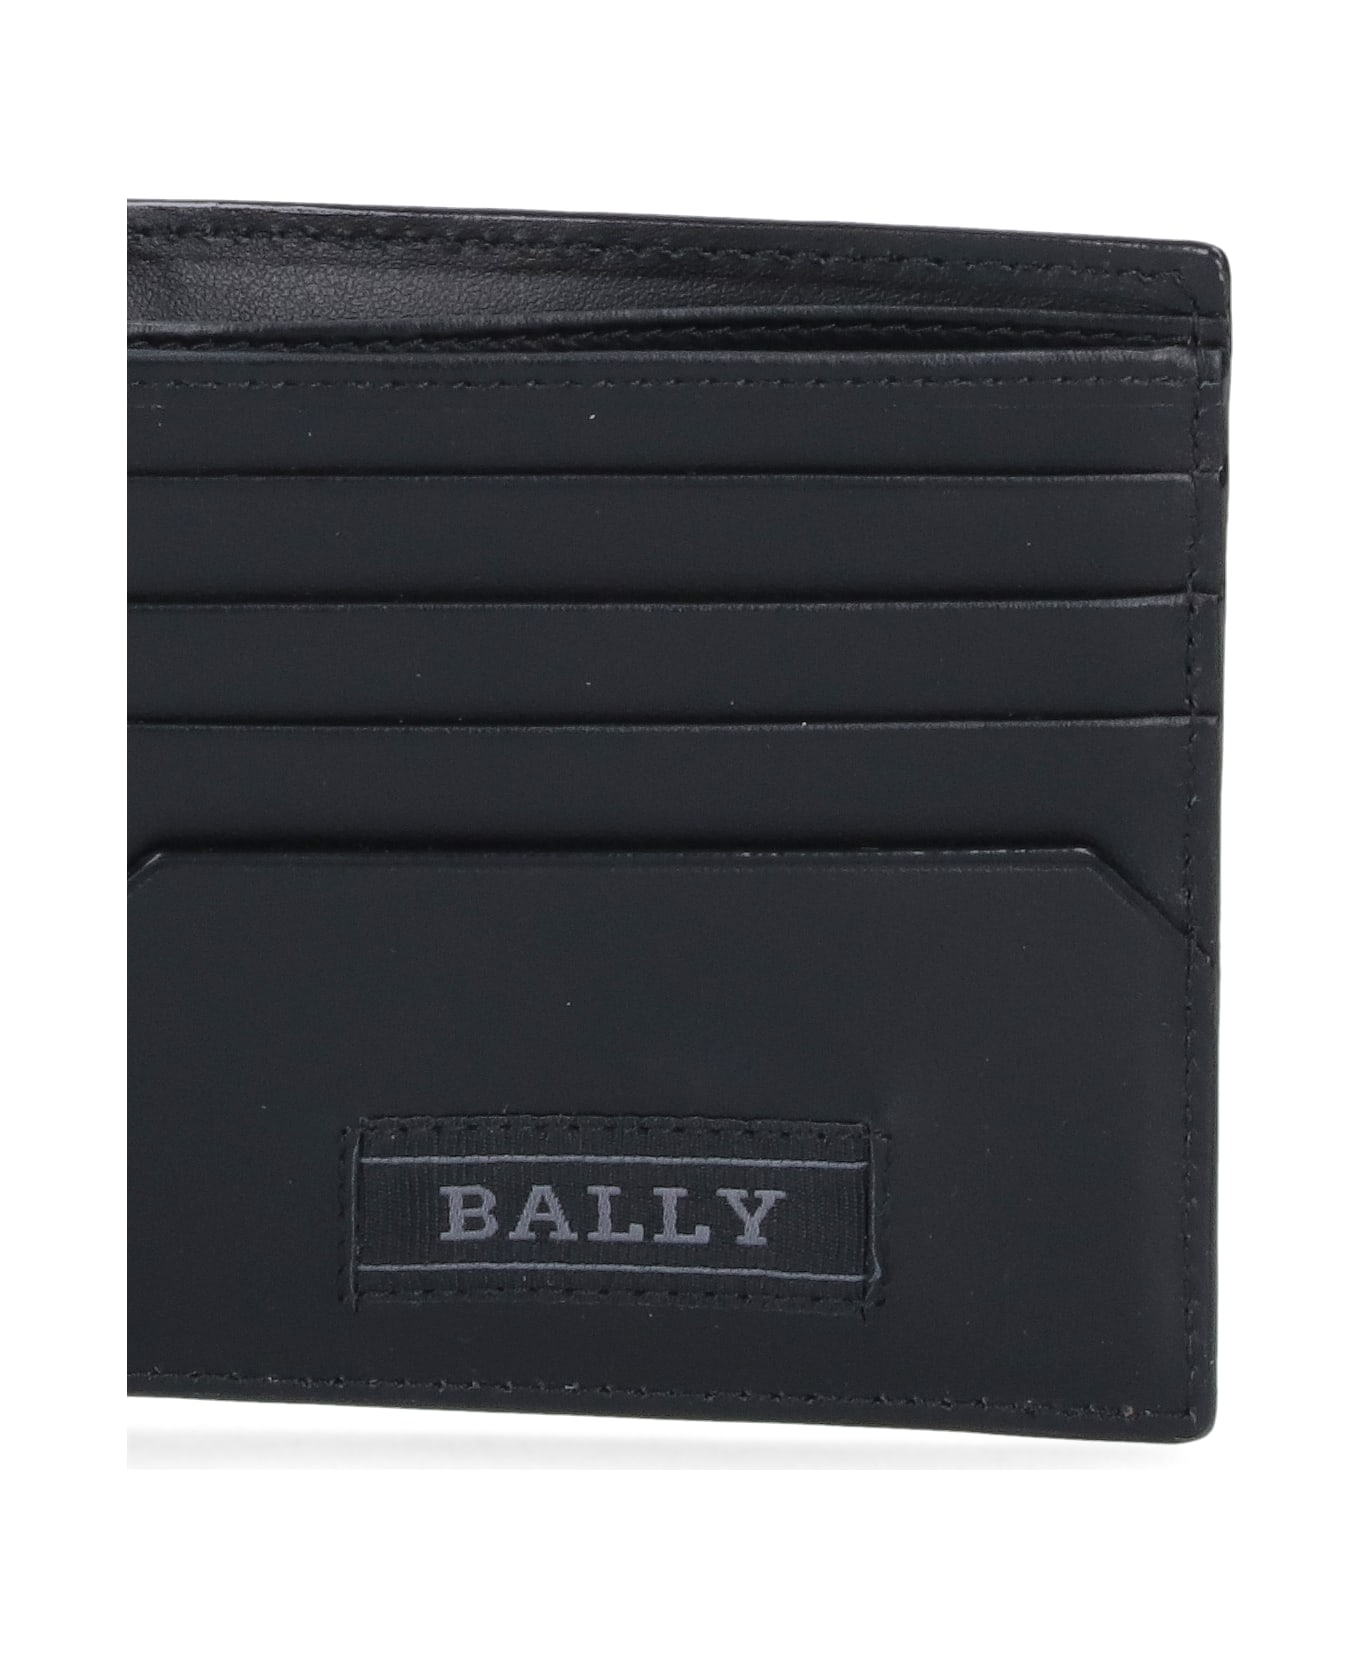 Bally Bi-fold Wallet "brasai" - Black  